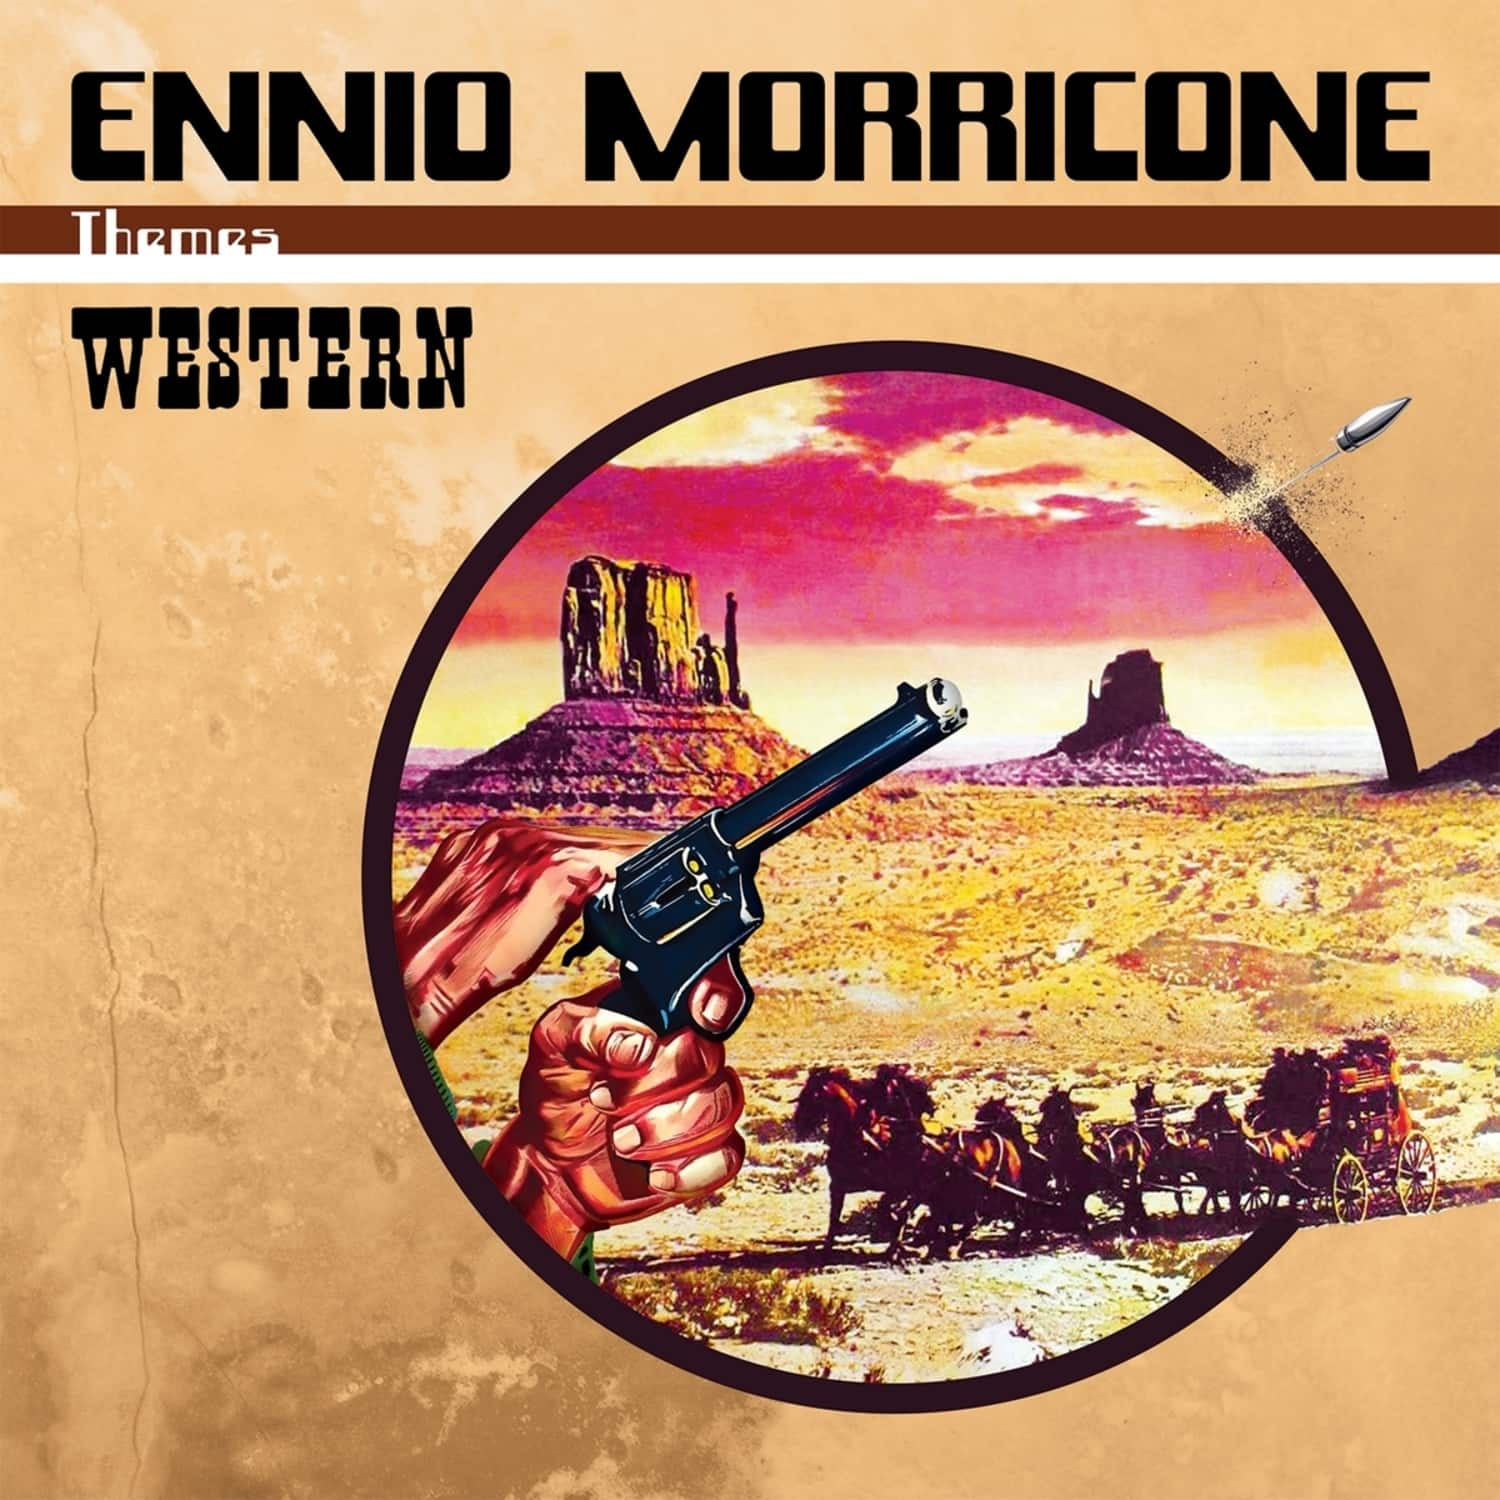  Ennio Morricone - WESTERN 